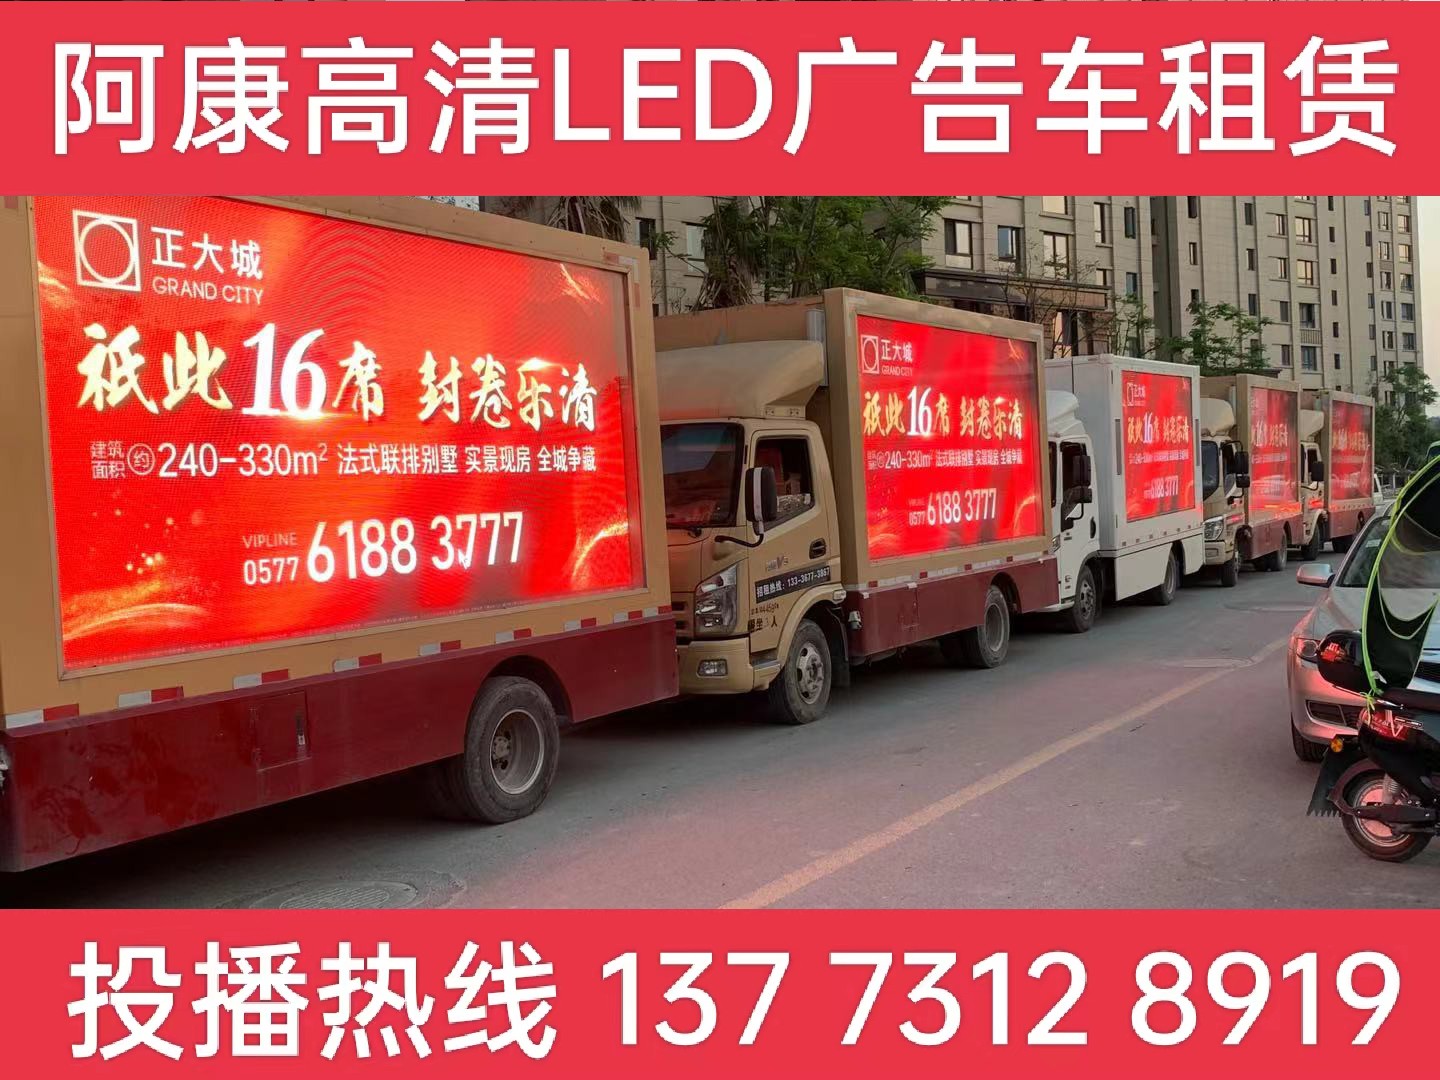 广德LED广告车出租